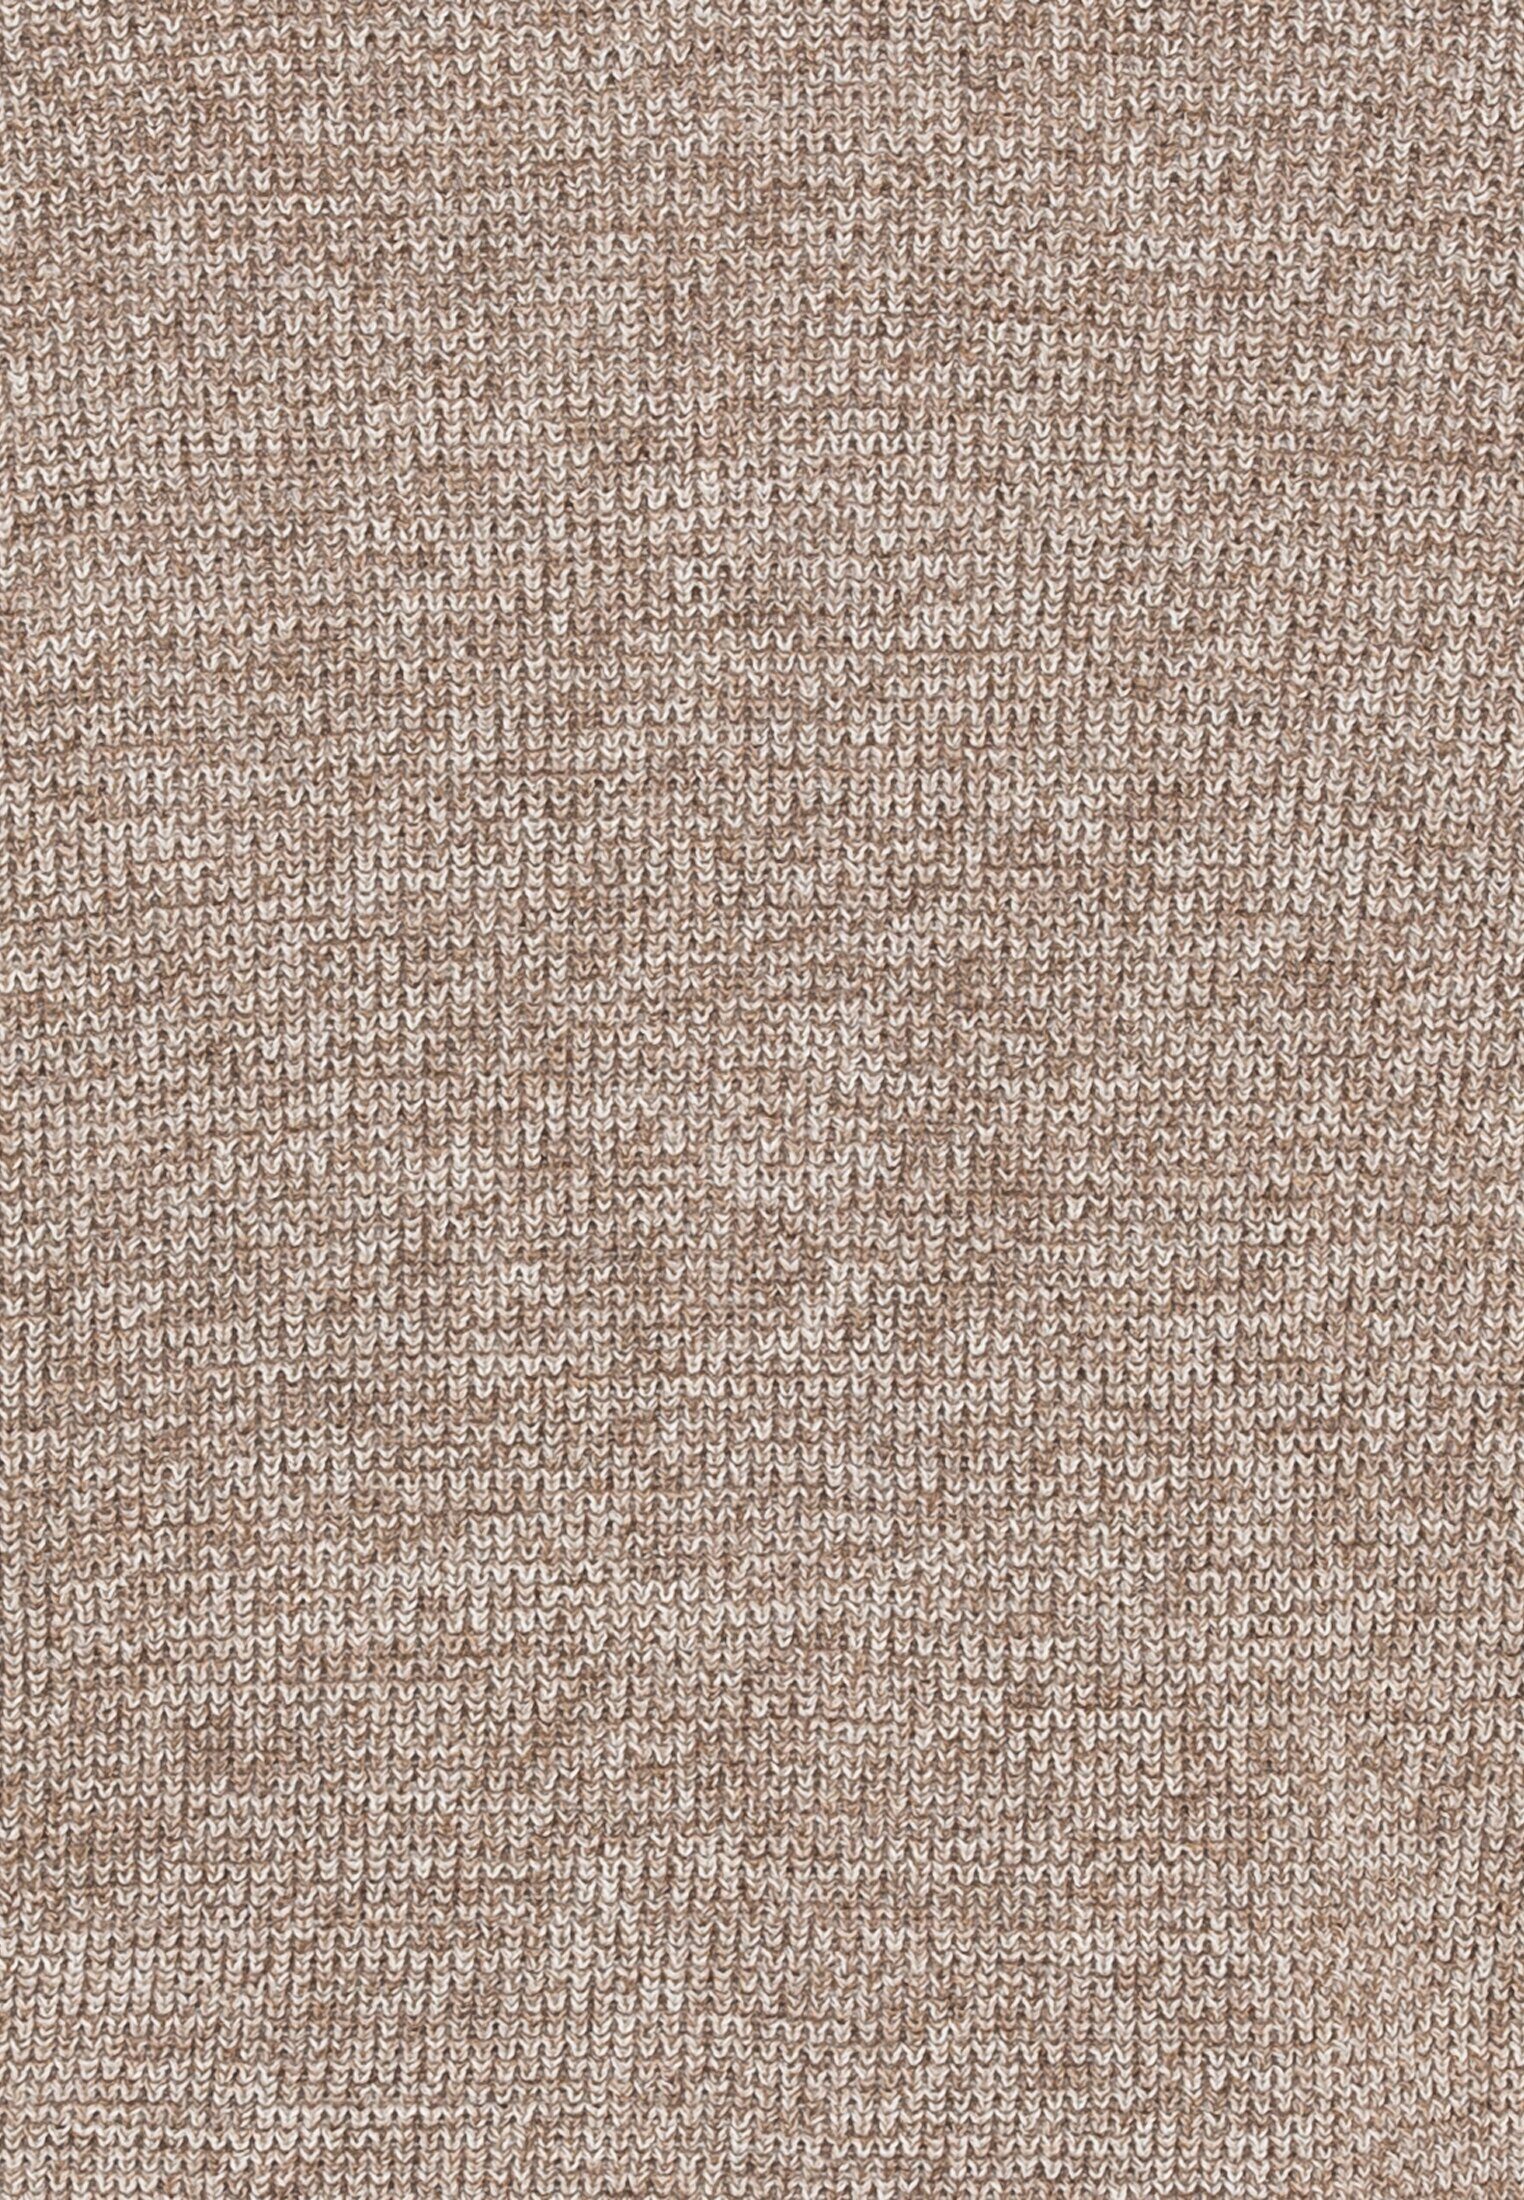 camel active Strickjacke aus Stehkragen einem Beige-Braun Baumwollmix soften